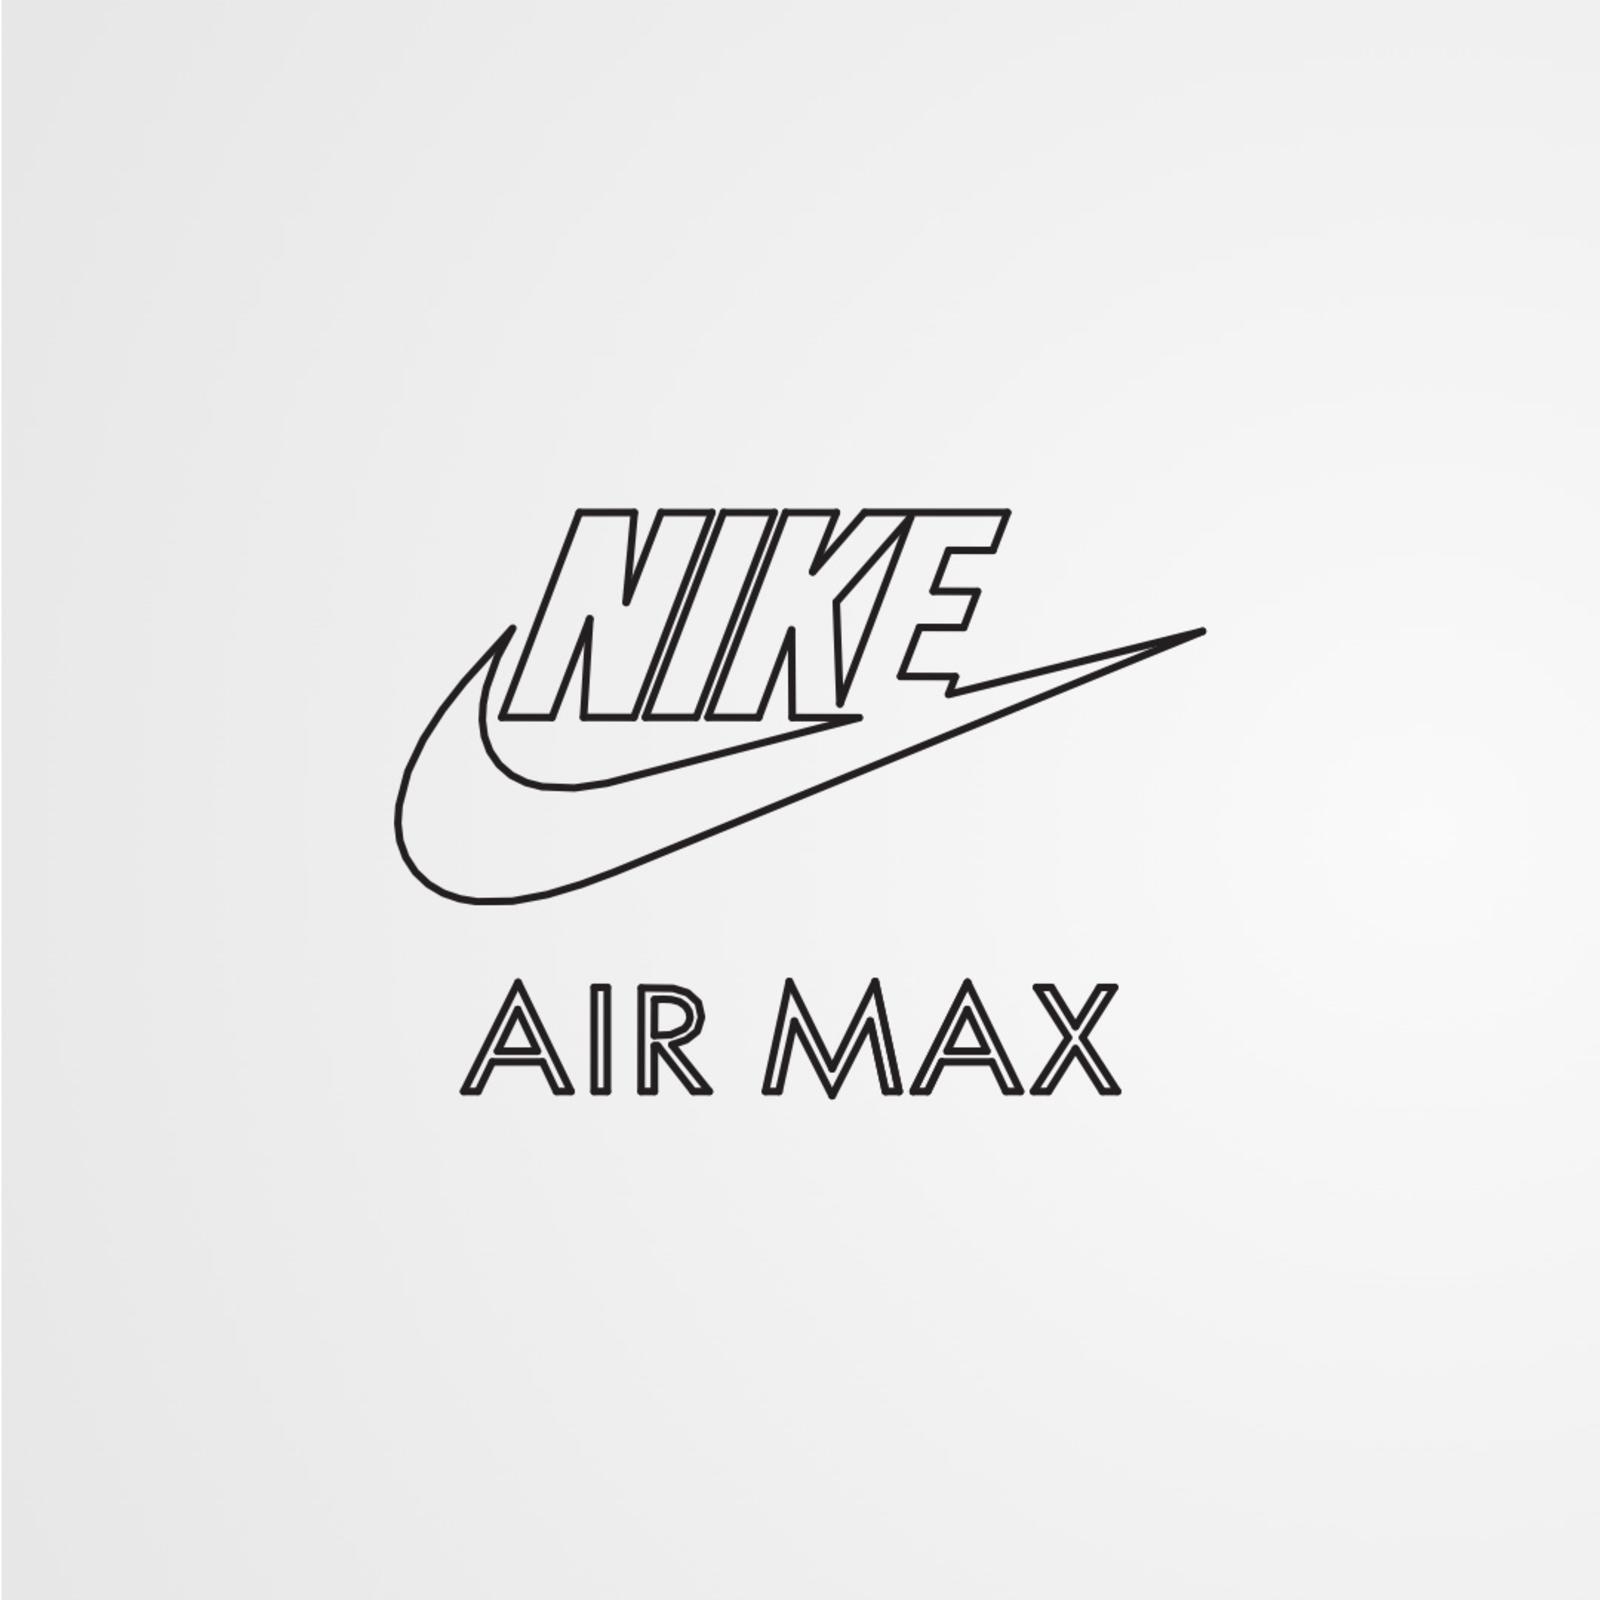 Air Max Logos